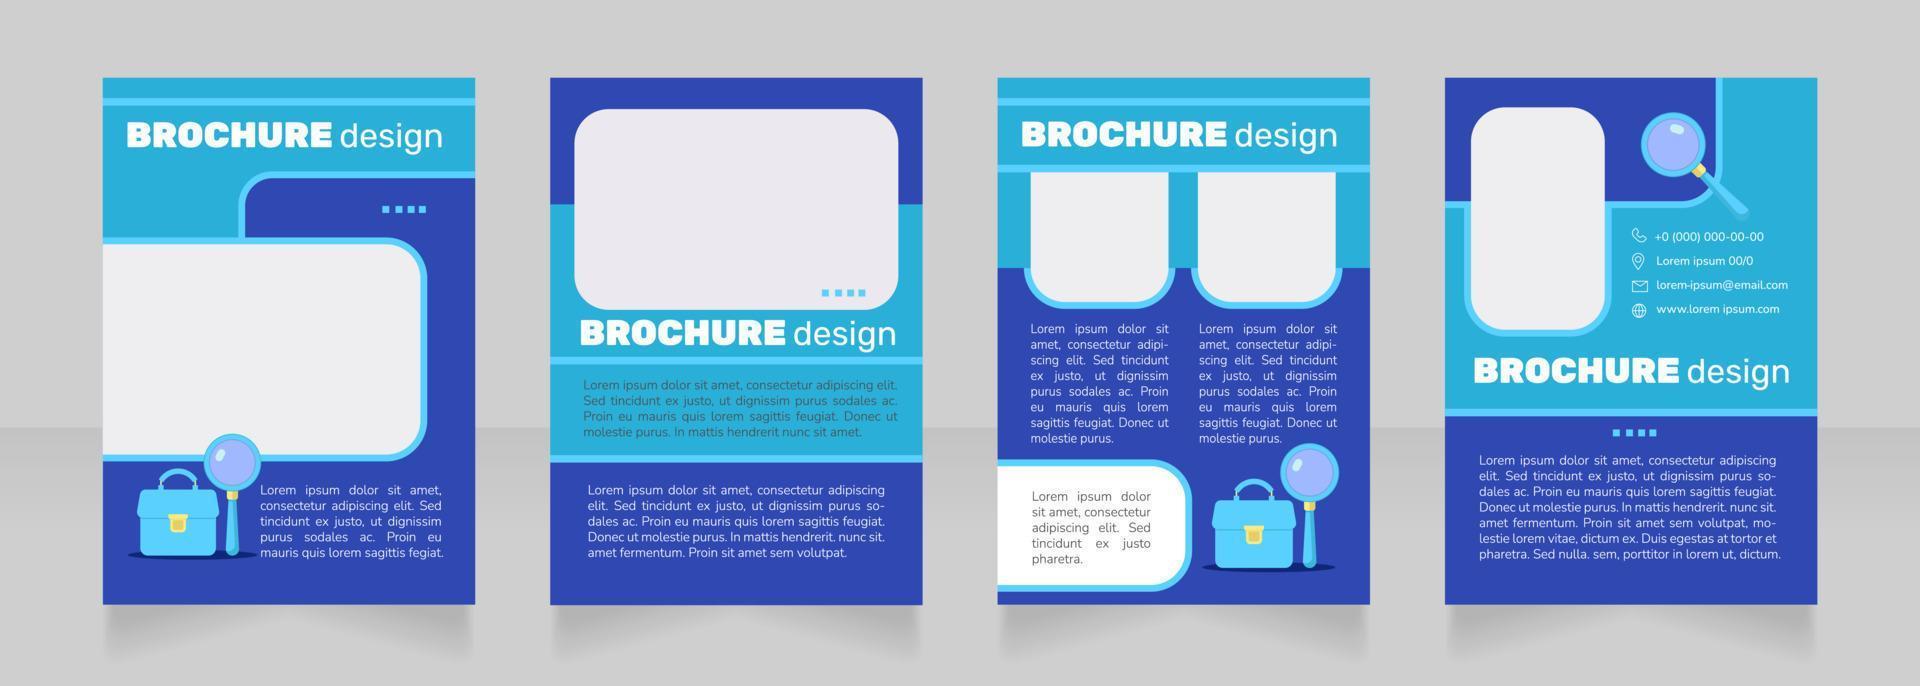 Job interview common questions blank brochure design vector